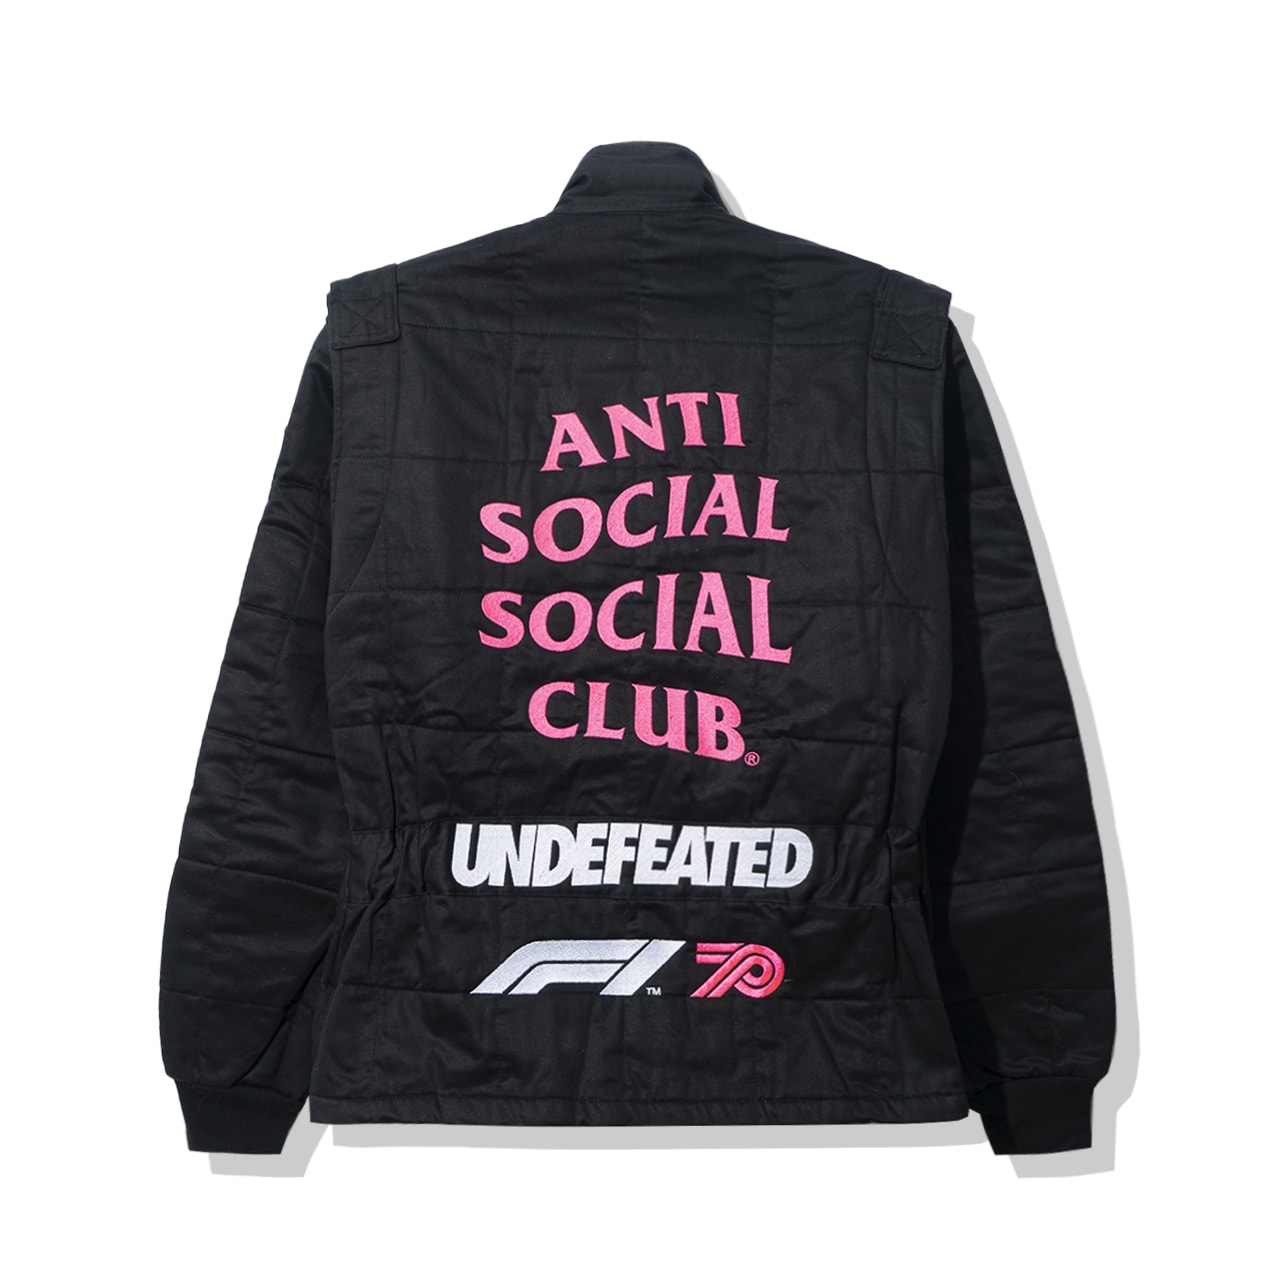 Anti Social Social Club x UNDEFEATED x Formula 1 全新聯乘系列正式發佈